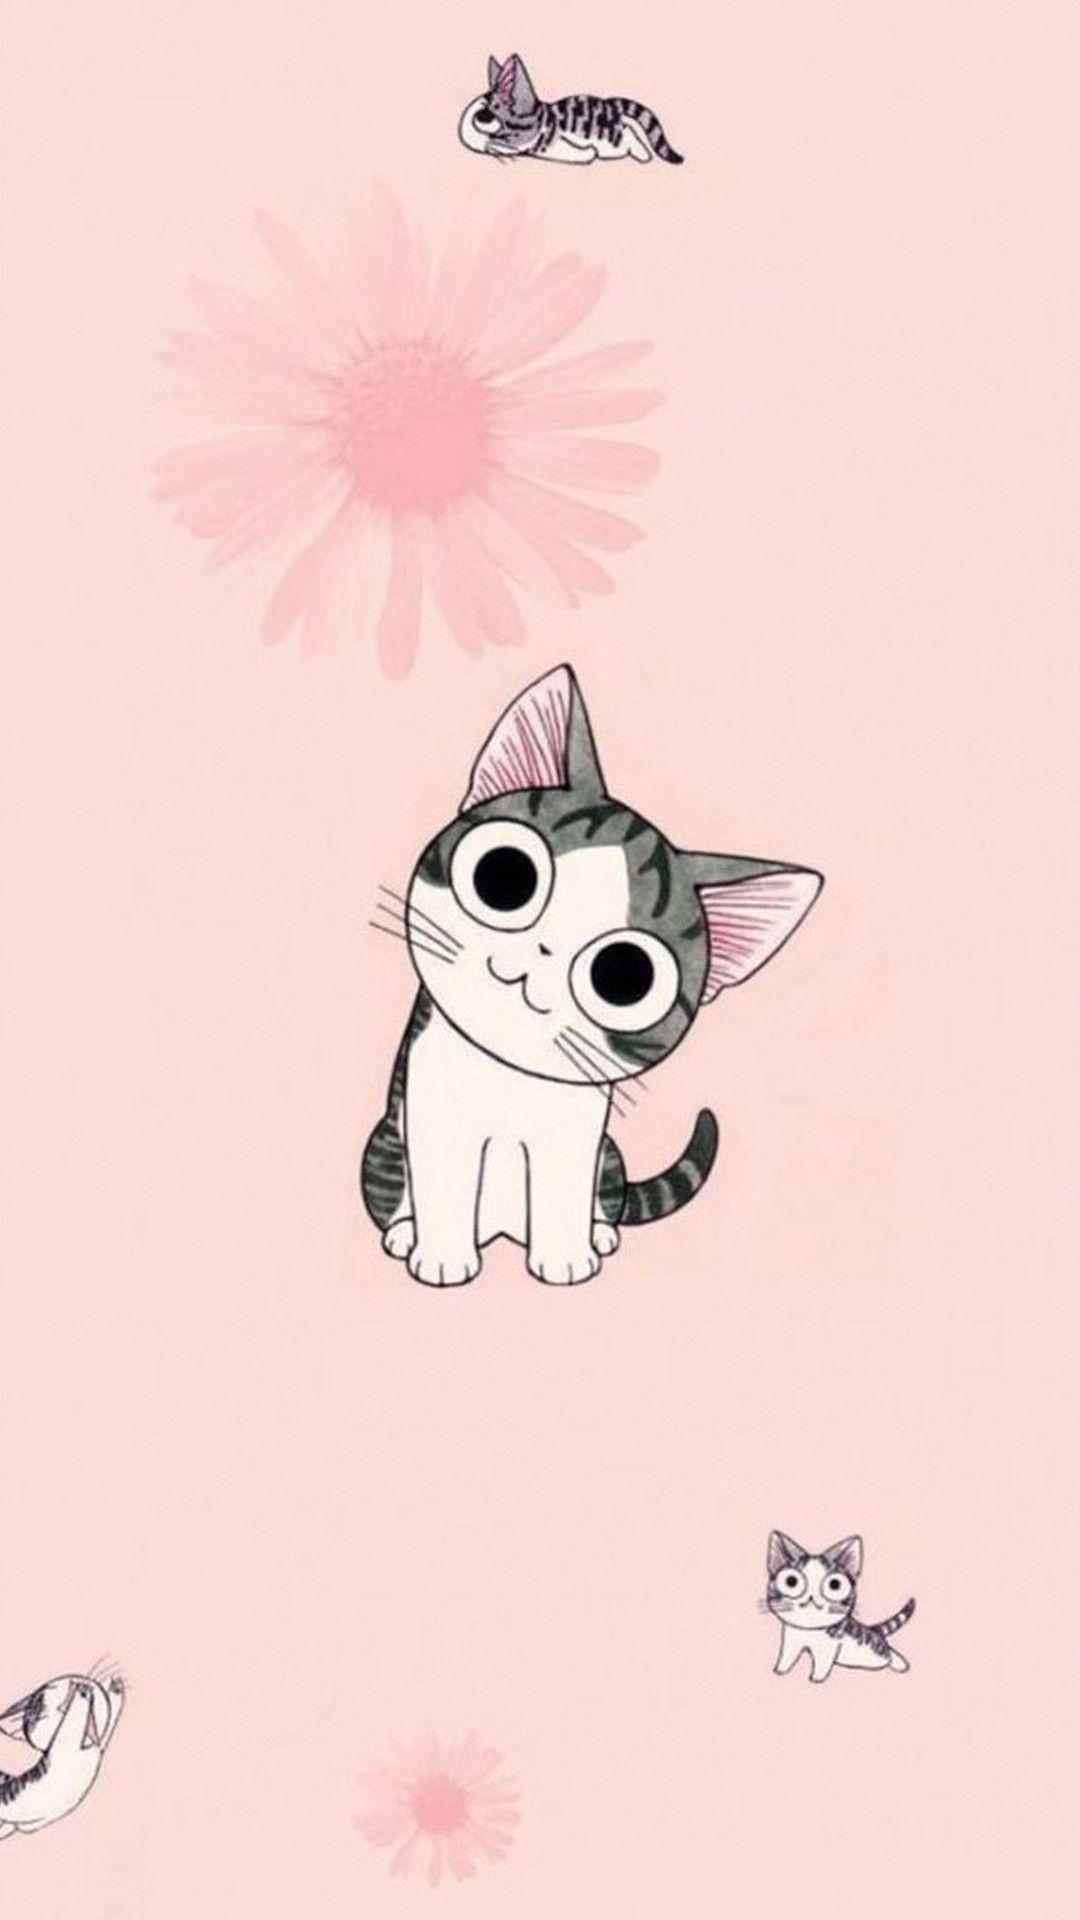 1080 x 1920 · jpeg - Funny Cartoon Cat iPhone Wallpaper | Cute cat wallpaper, Cute anime cat ...